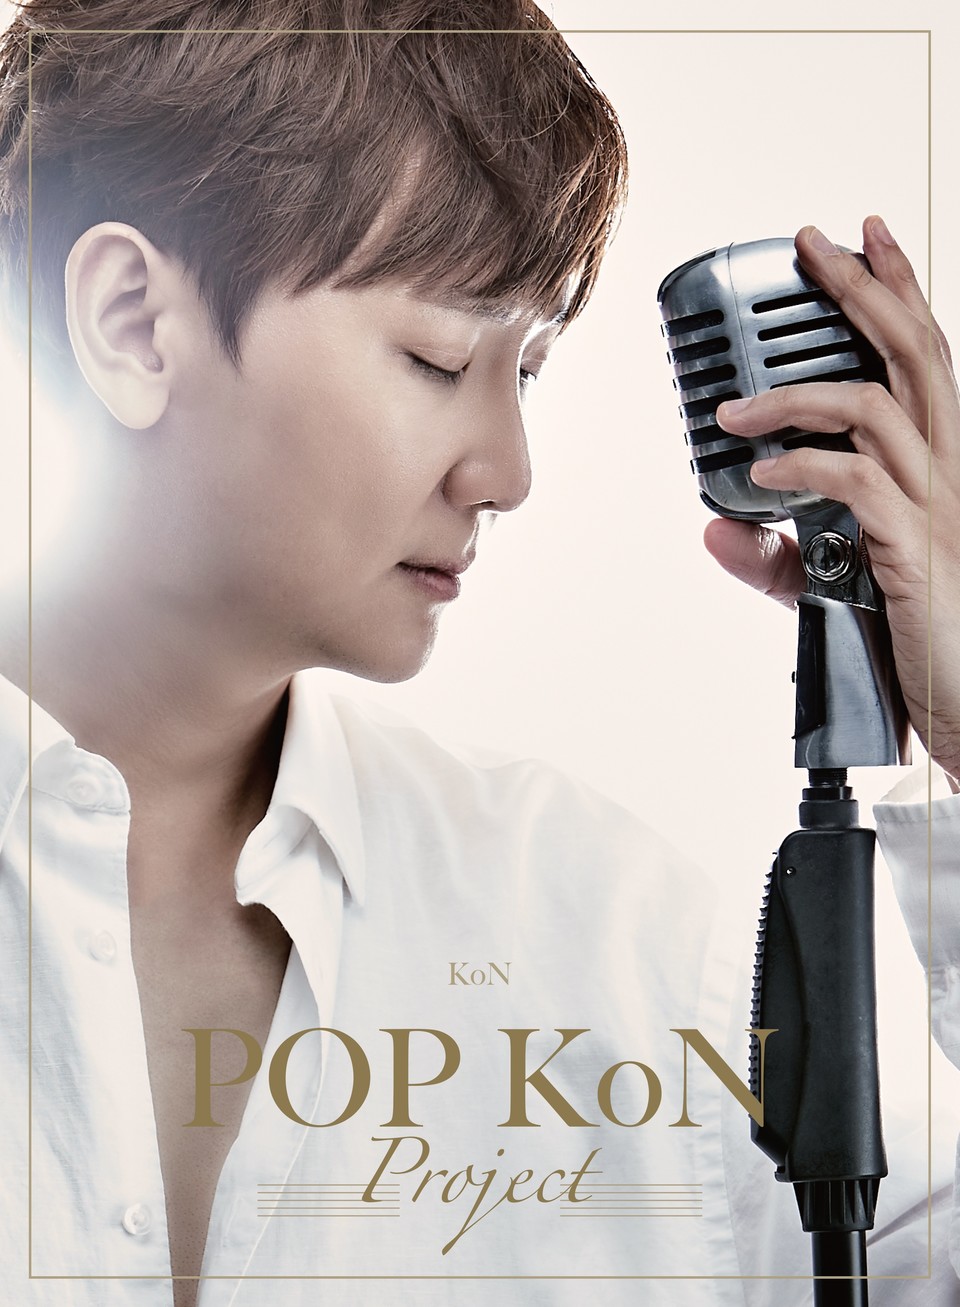 (사진제공 : 아이엠엔터테인먼트) 팝콘(POP-KoN) 프로젝트